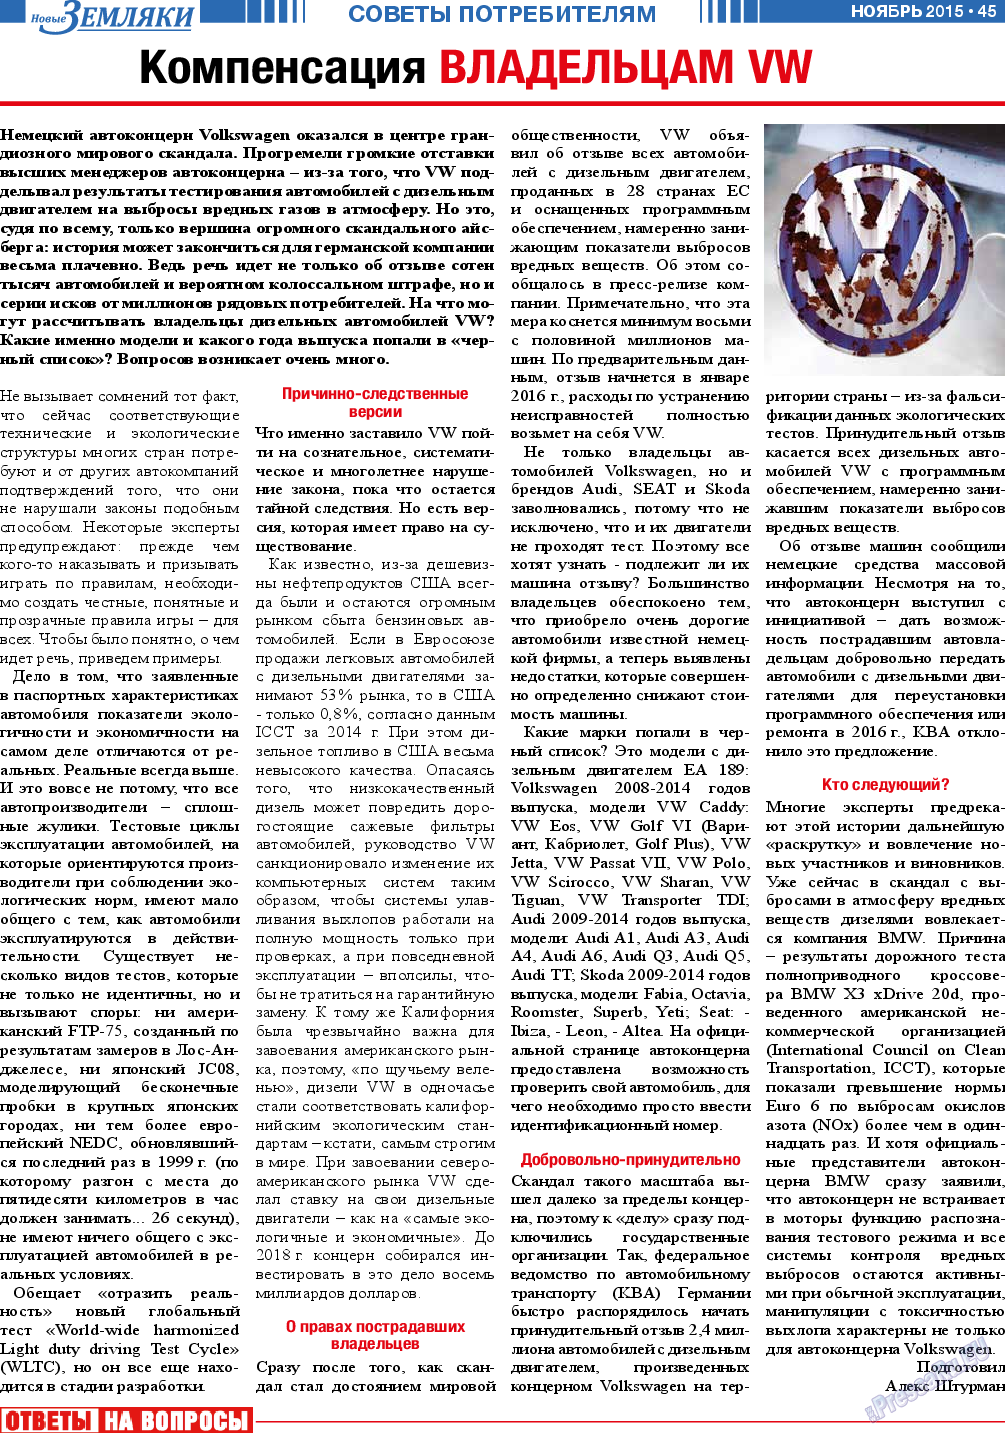 Новые Земляки (газета). 2015 год, номер 11, стр. 45